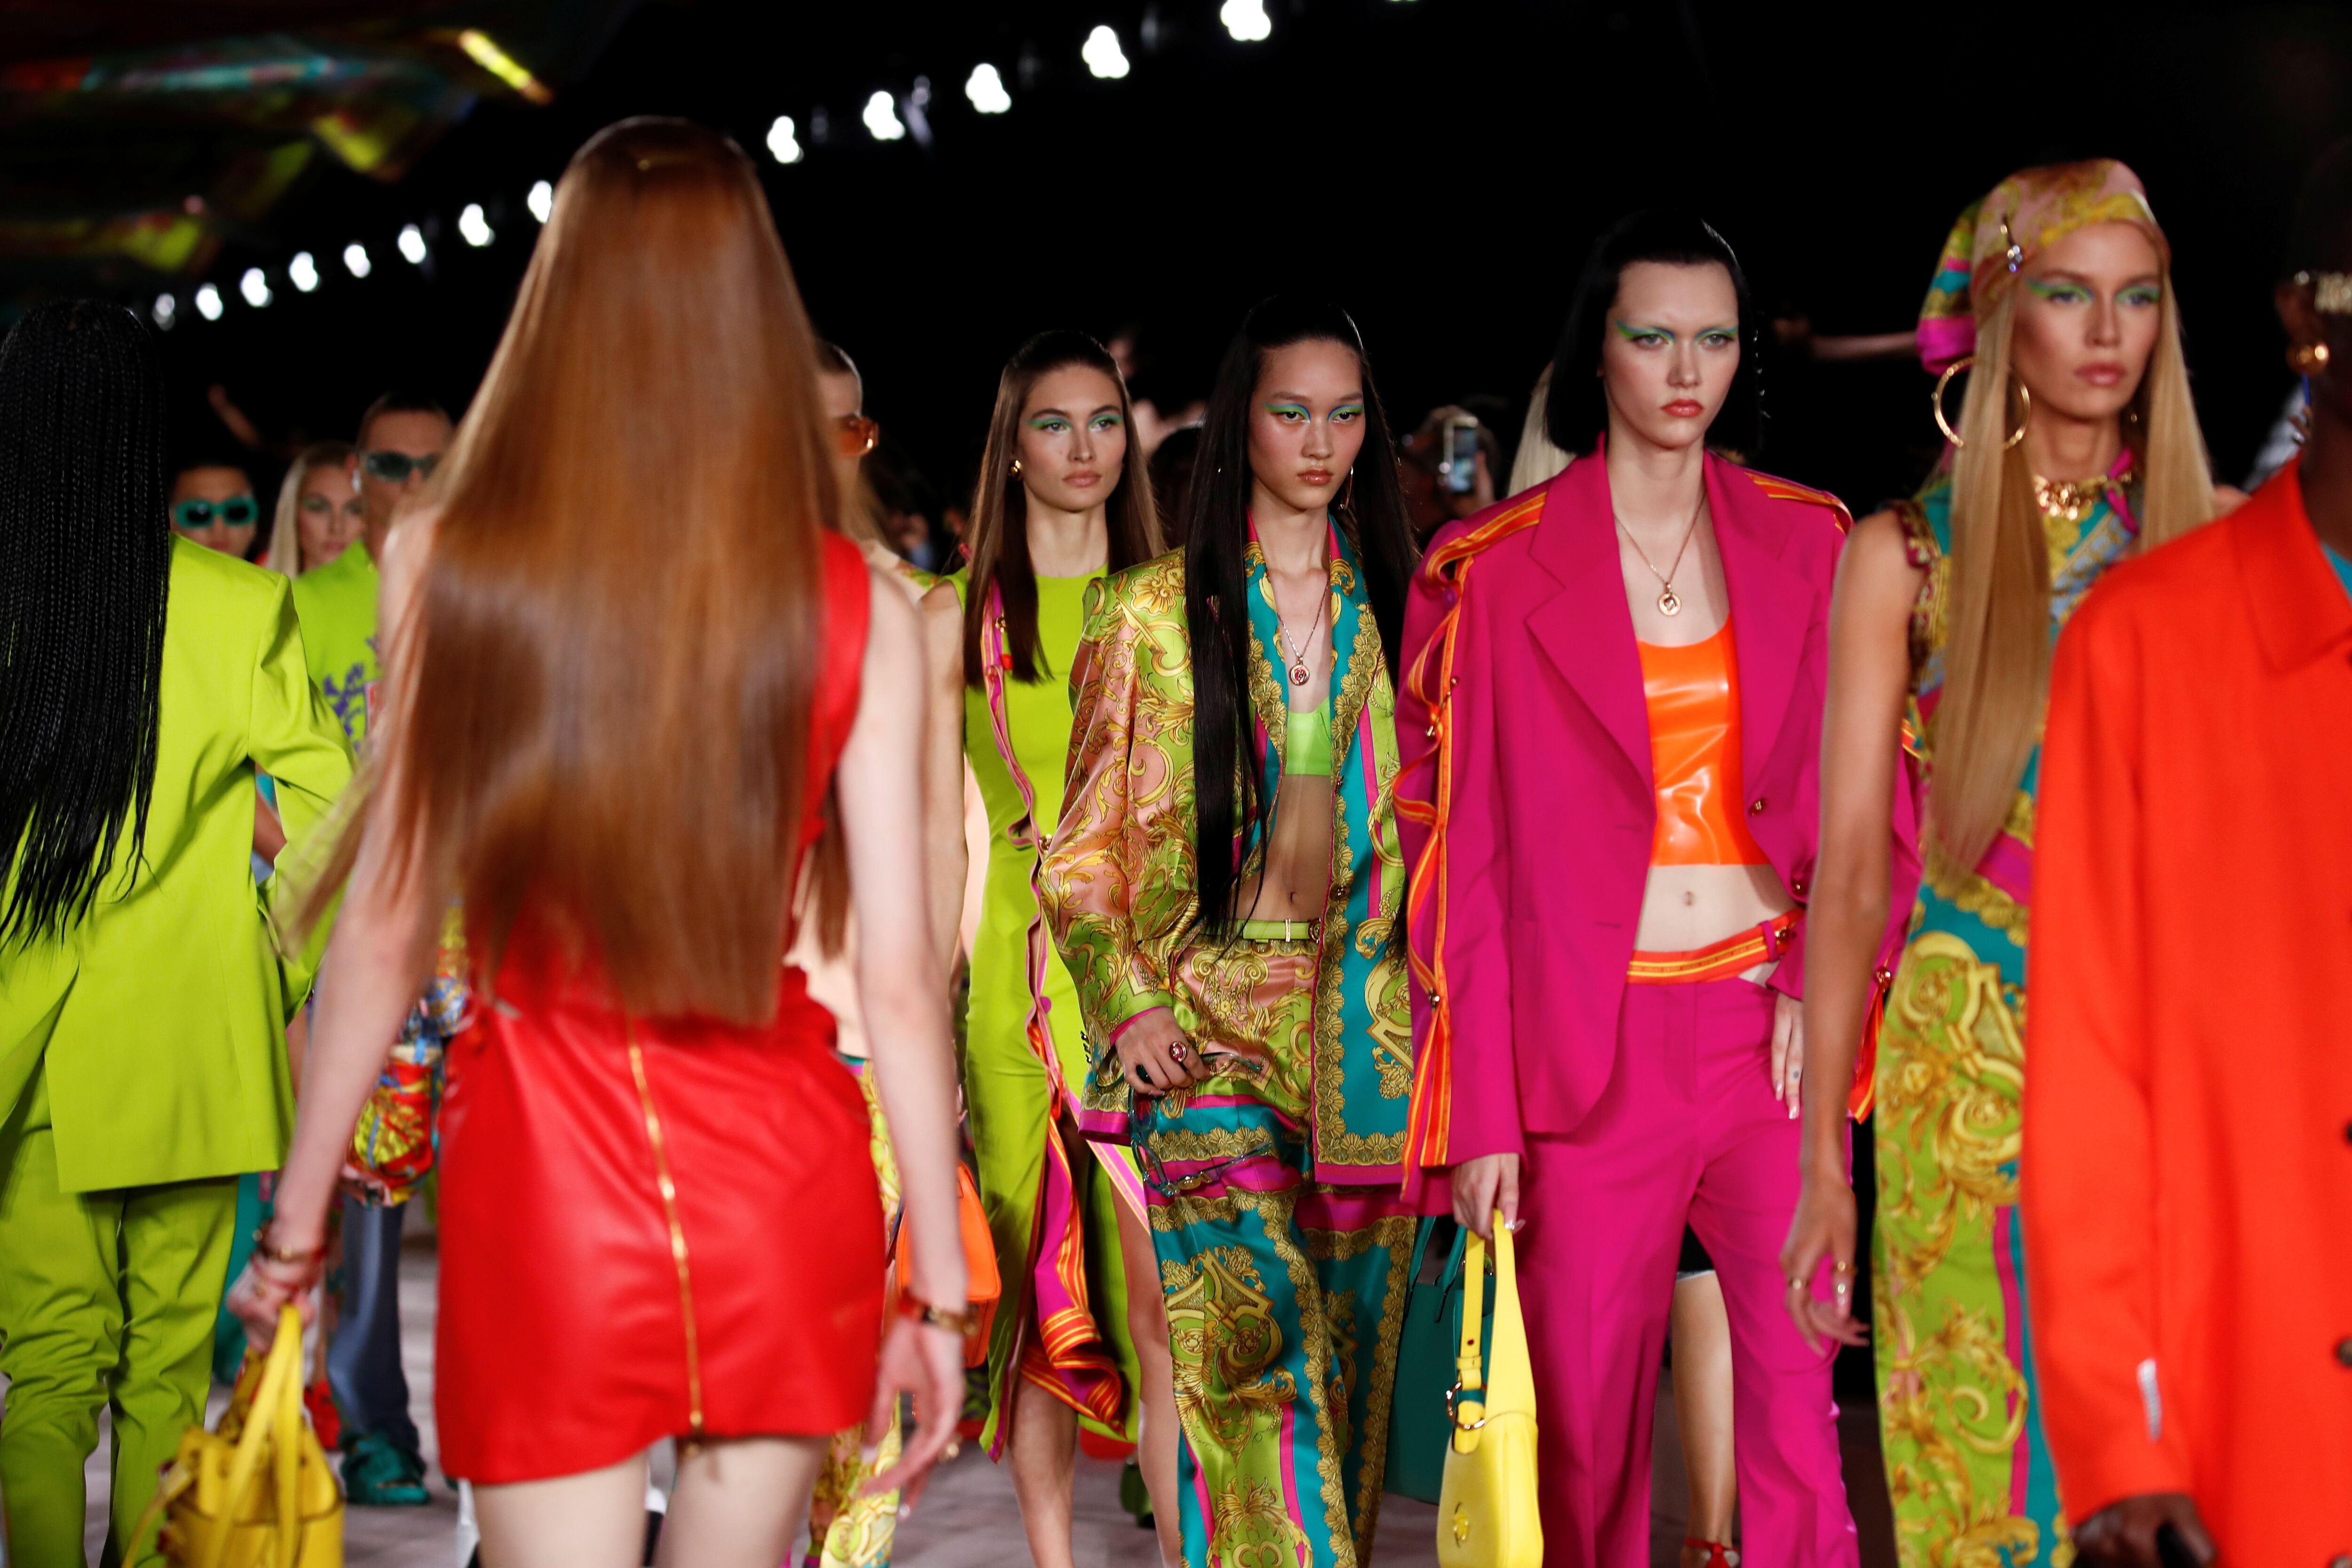 Versace presentó vestidos de látex y minifaldas brillantes en colores neón